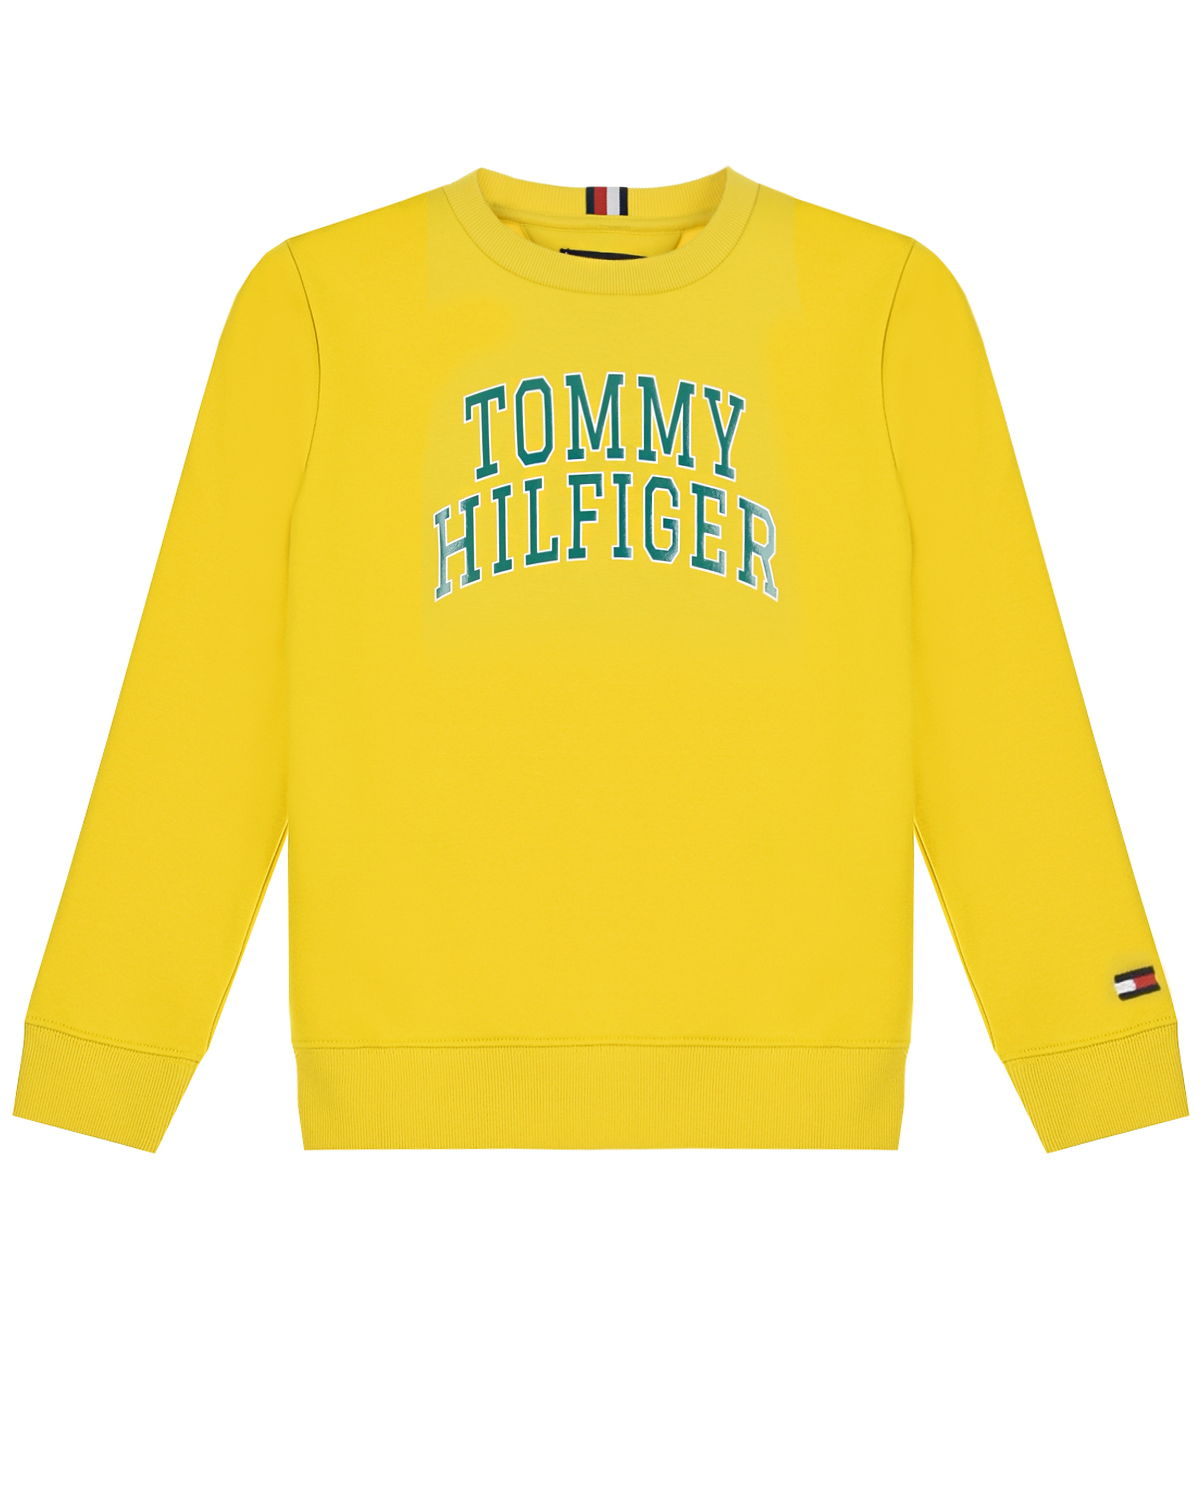 Купить Желтый свитшот с синим логотипом Tommy Hilfiger детский, 58%хлопок+42%полиэстер